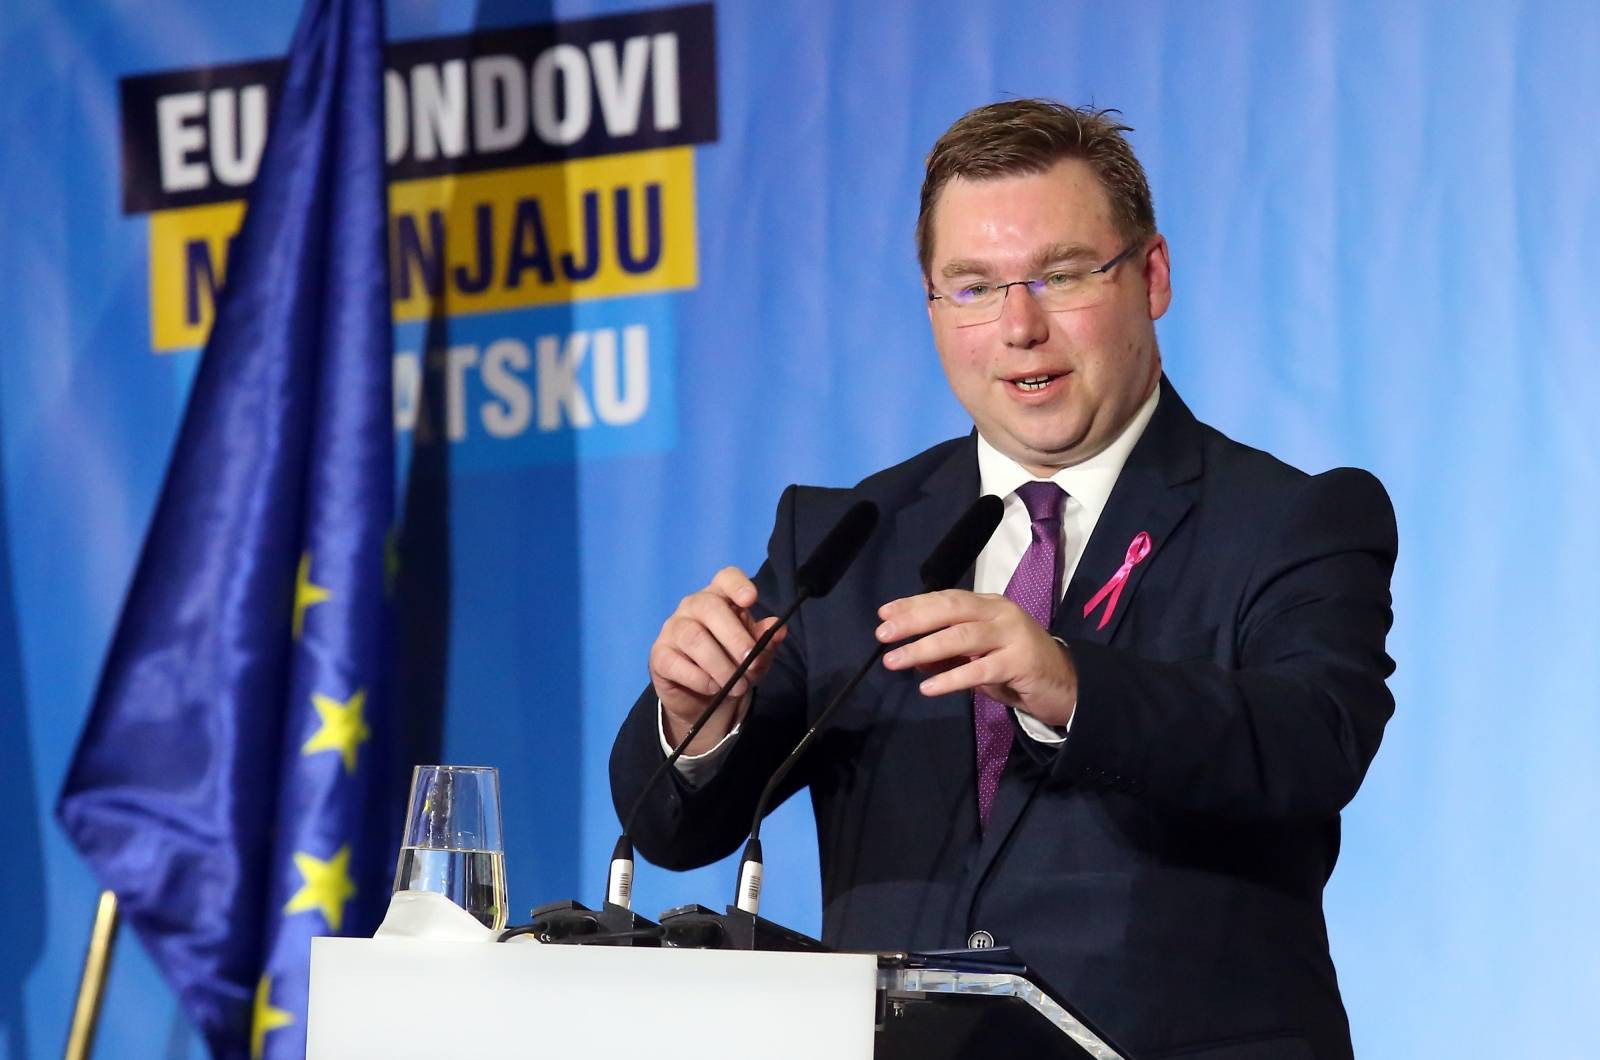 Å ibenik: Premijer Andrej PlenkoviÄ na Danima regionalnog razvoja i fondova EU